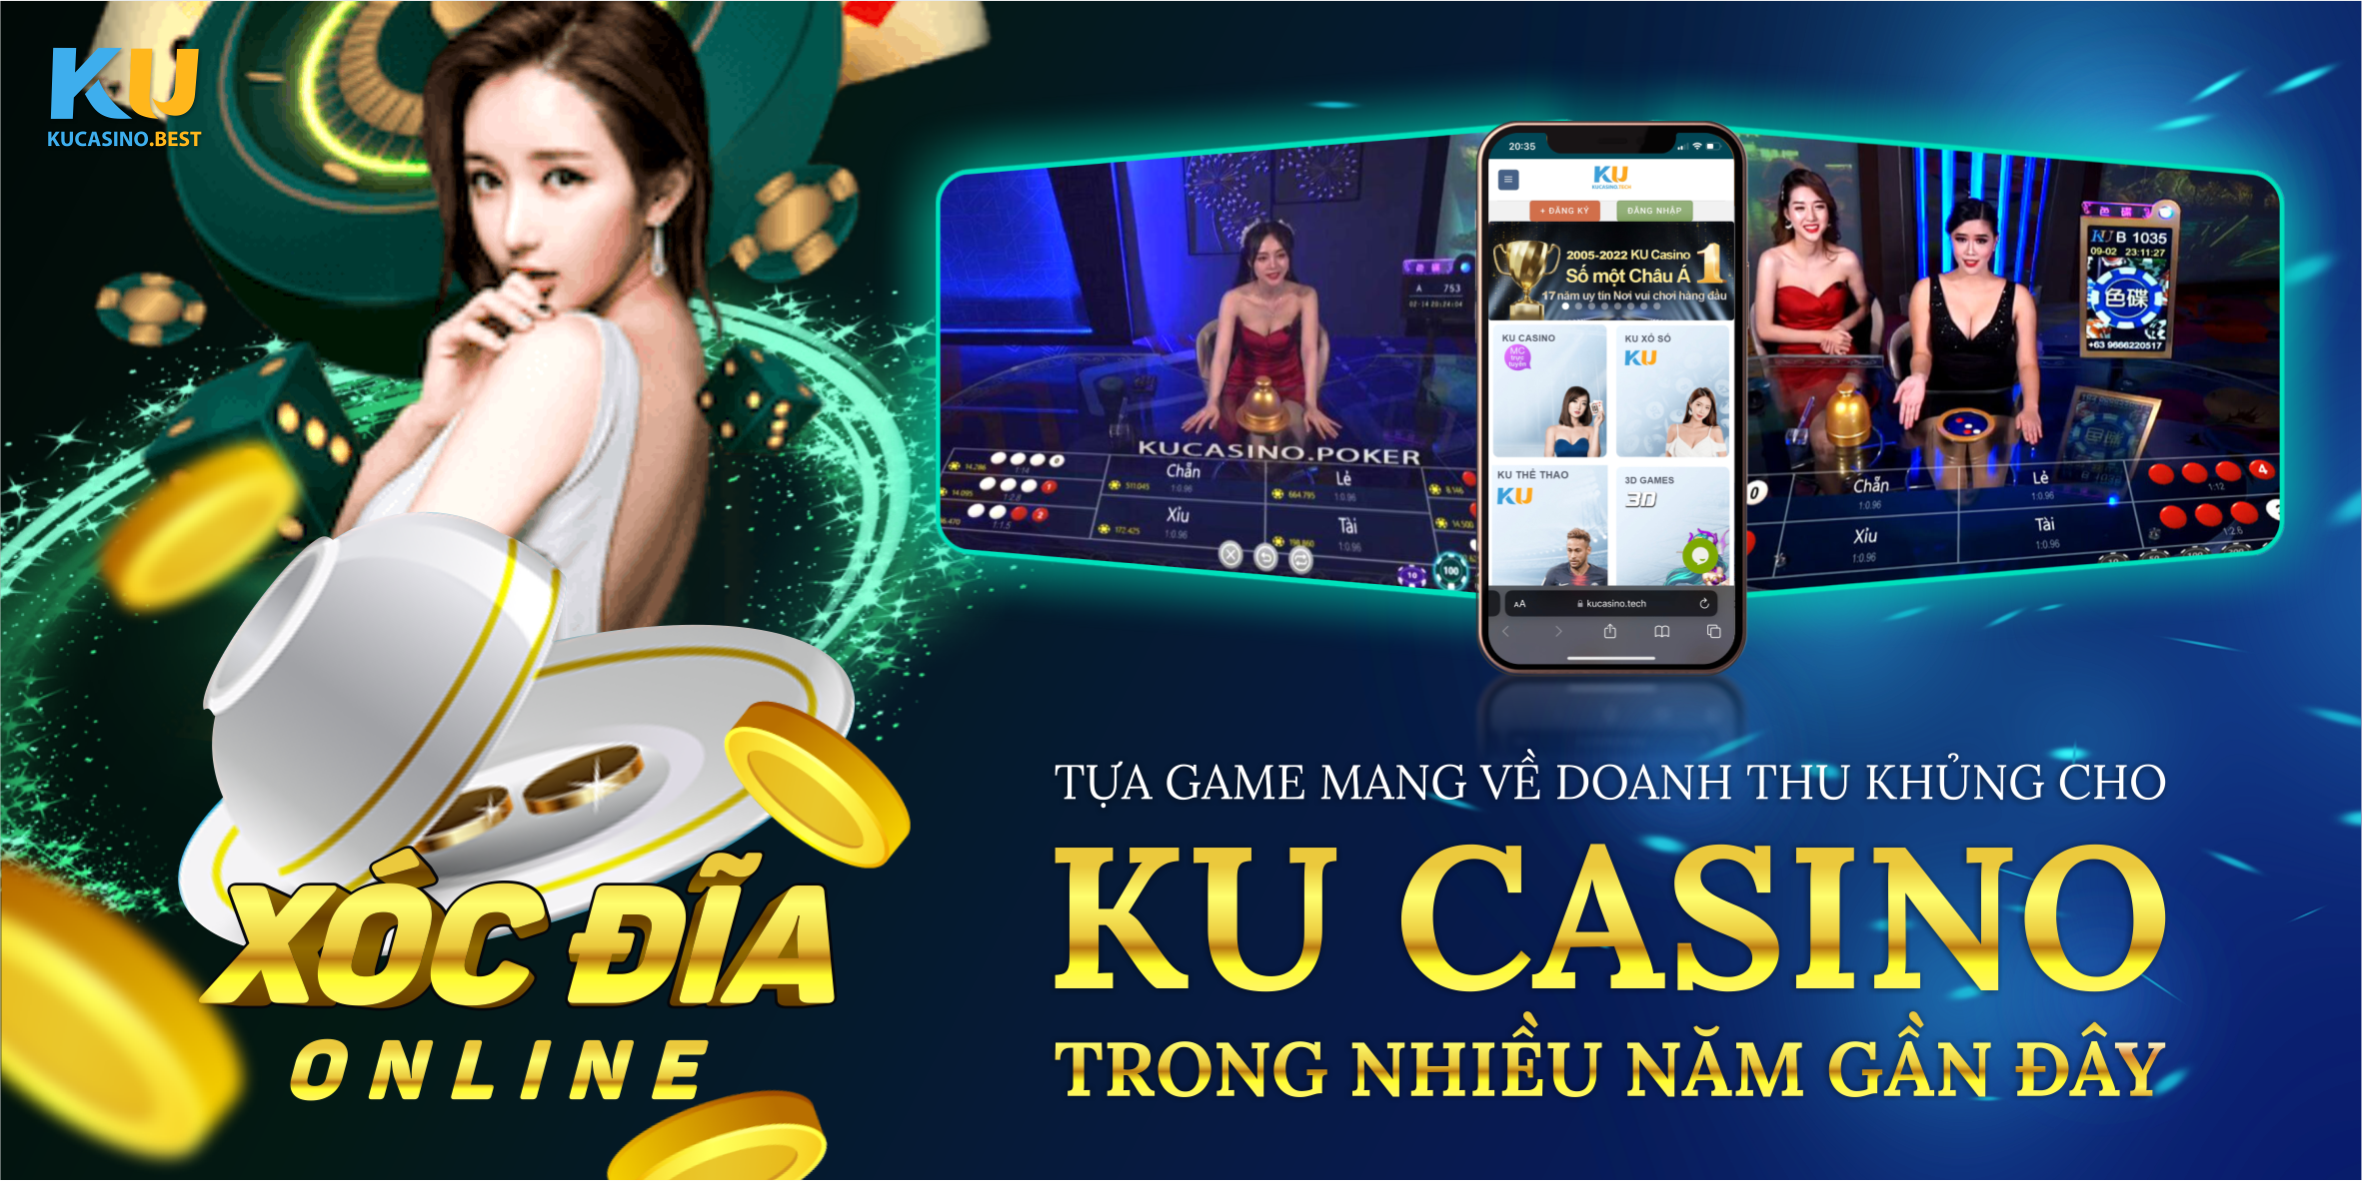 Xóc đĩa online là tựa game mang về doanh thu khủng cho Ku Casino nhiều năm gần đây